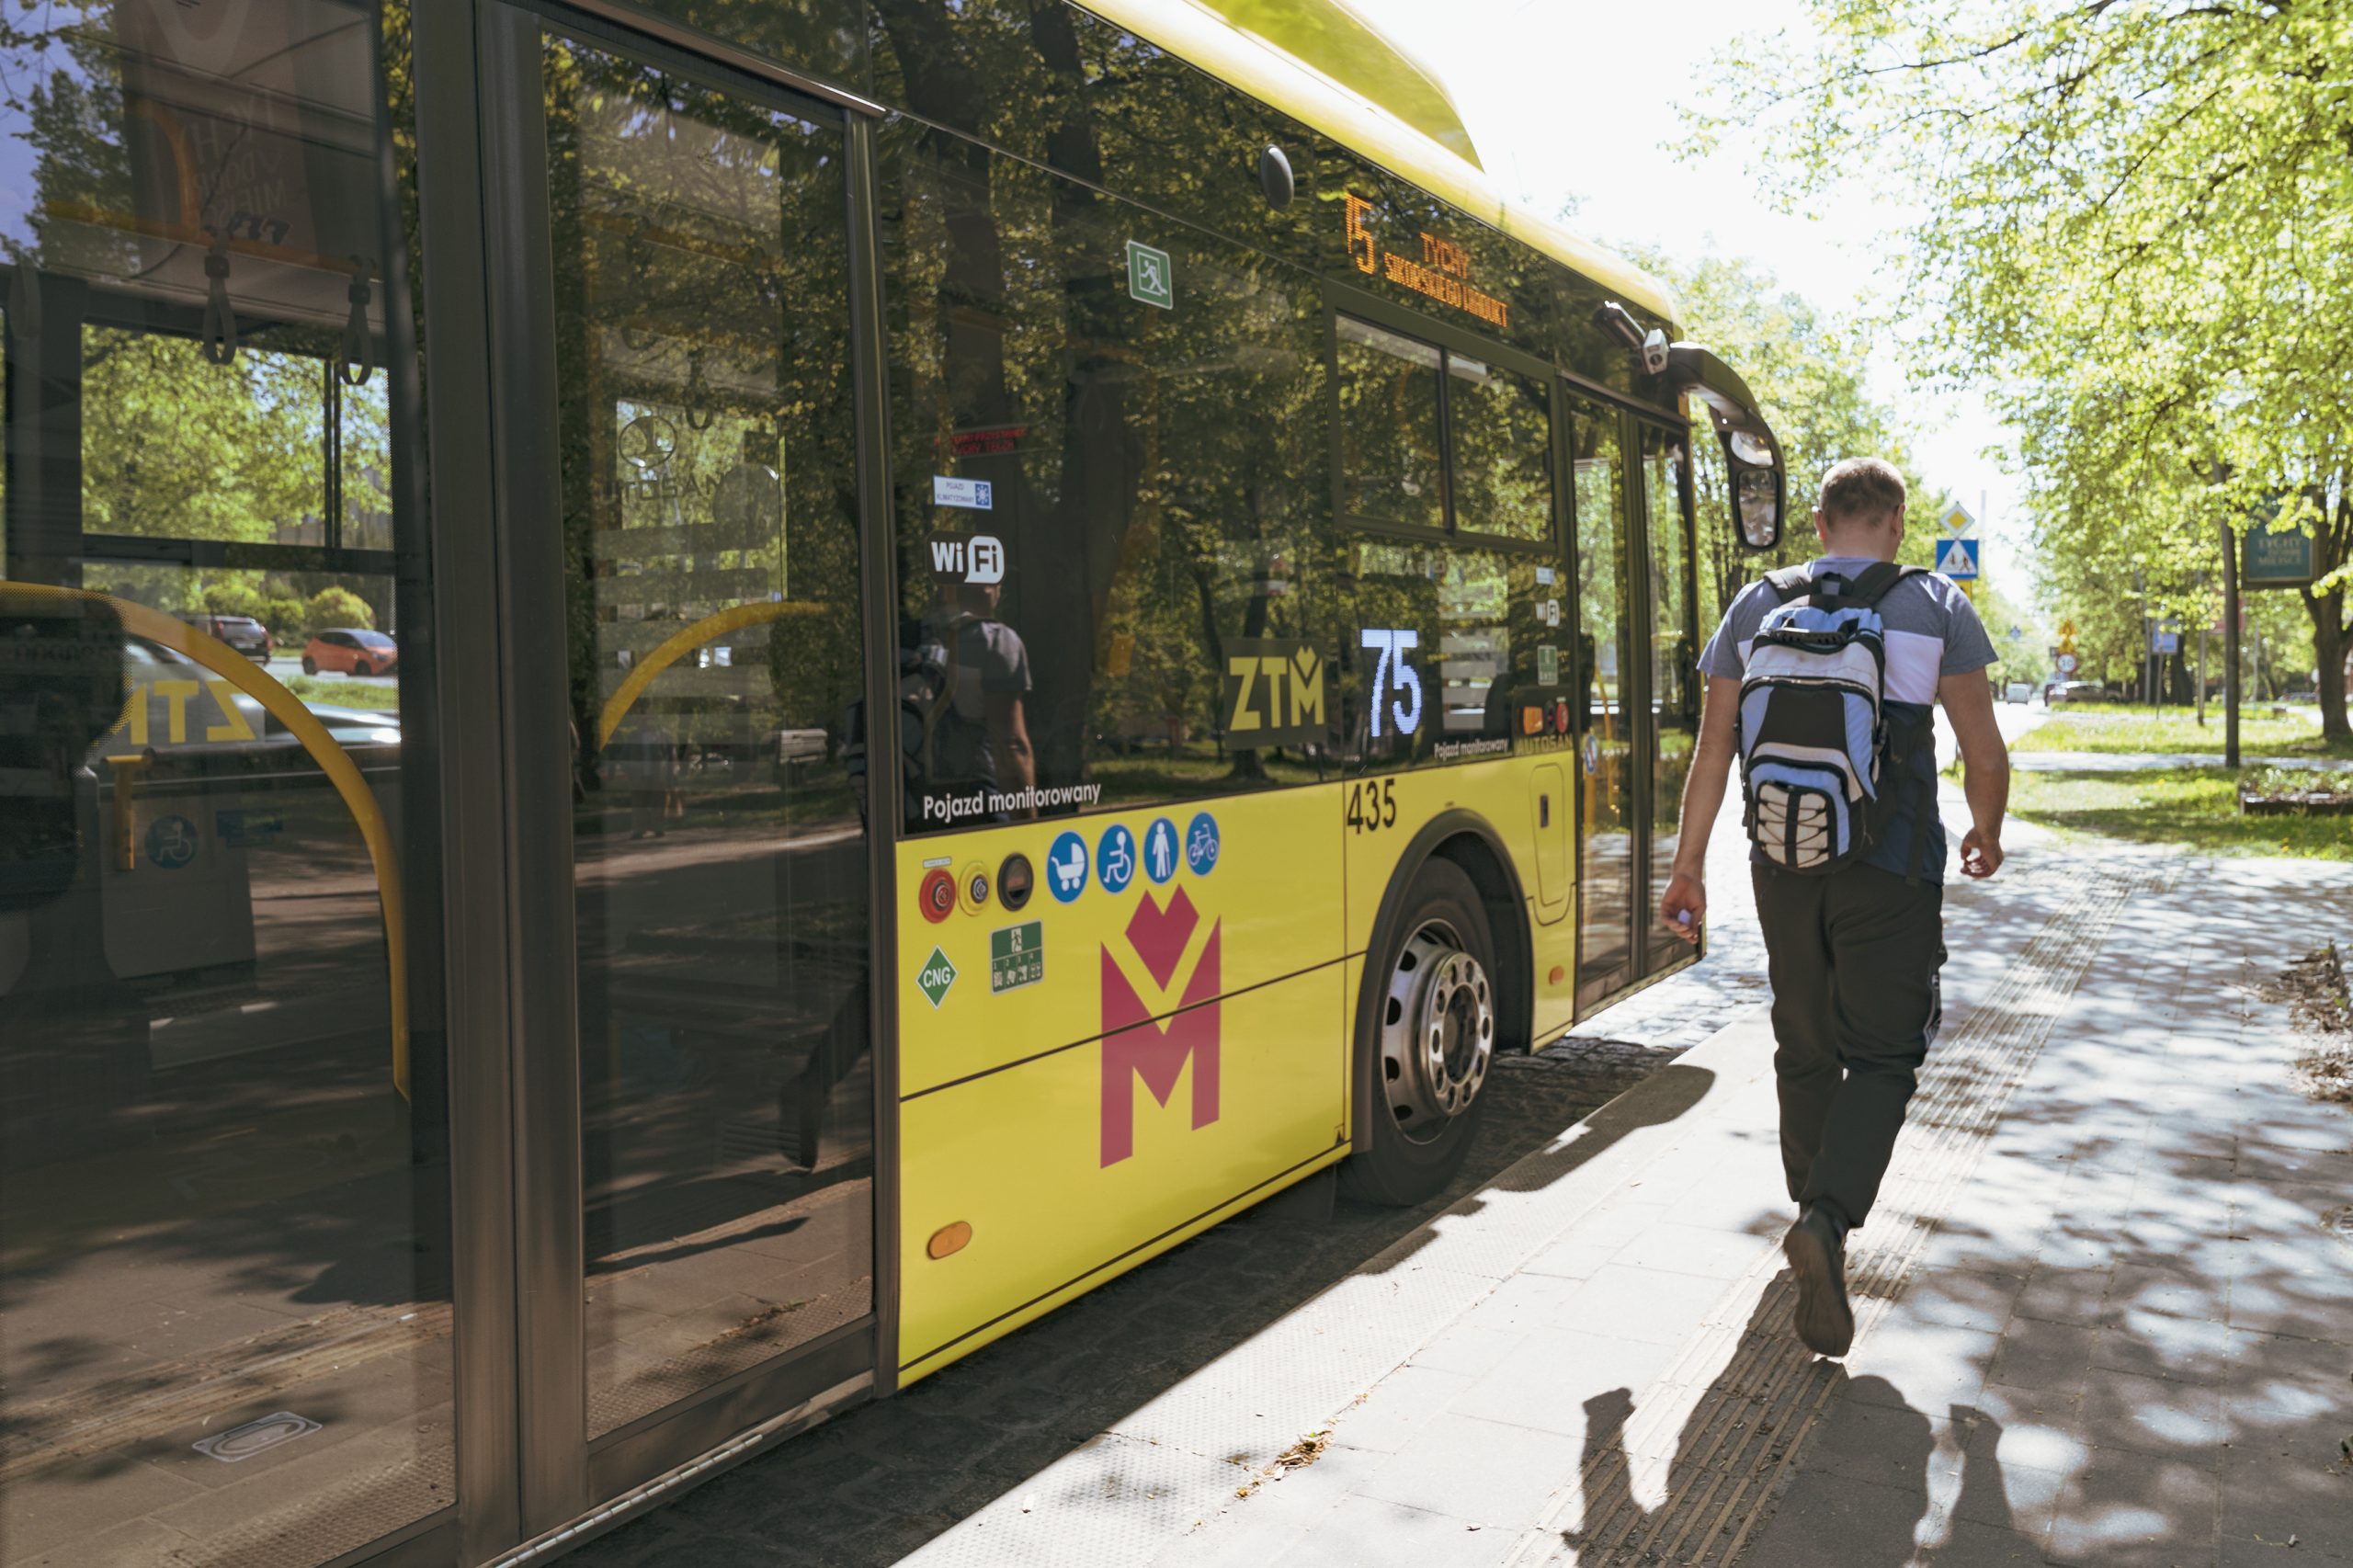 Na przystanku stoi żółty autobus w logo Metropolii, obok niego mężczyzna z plecakiem